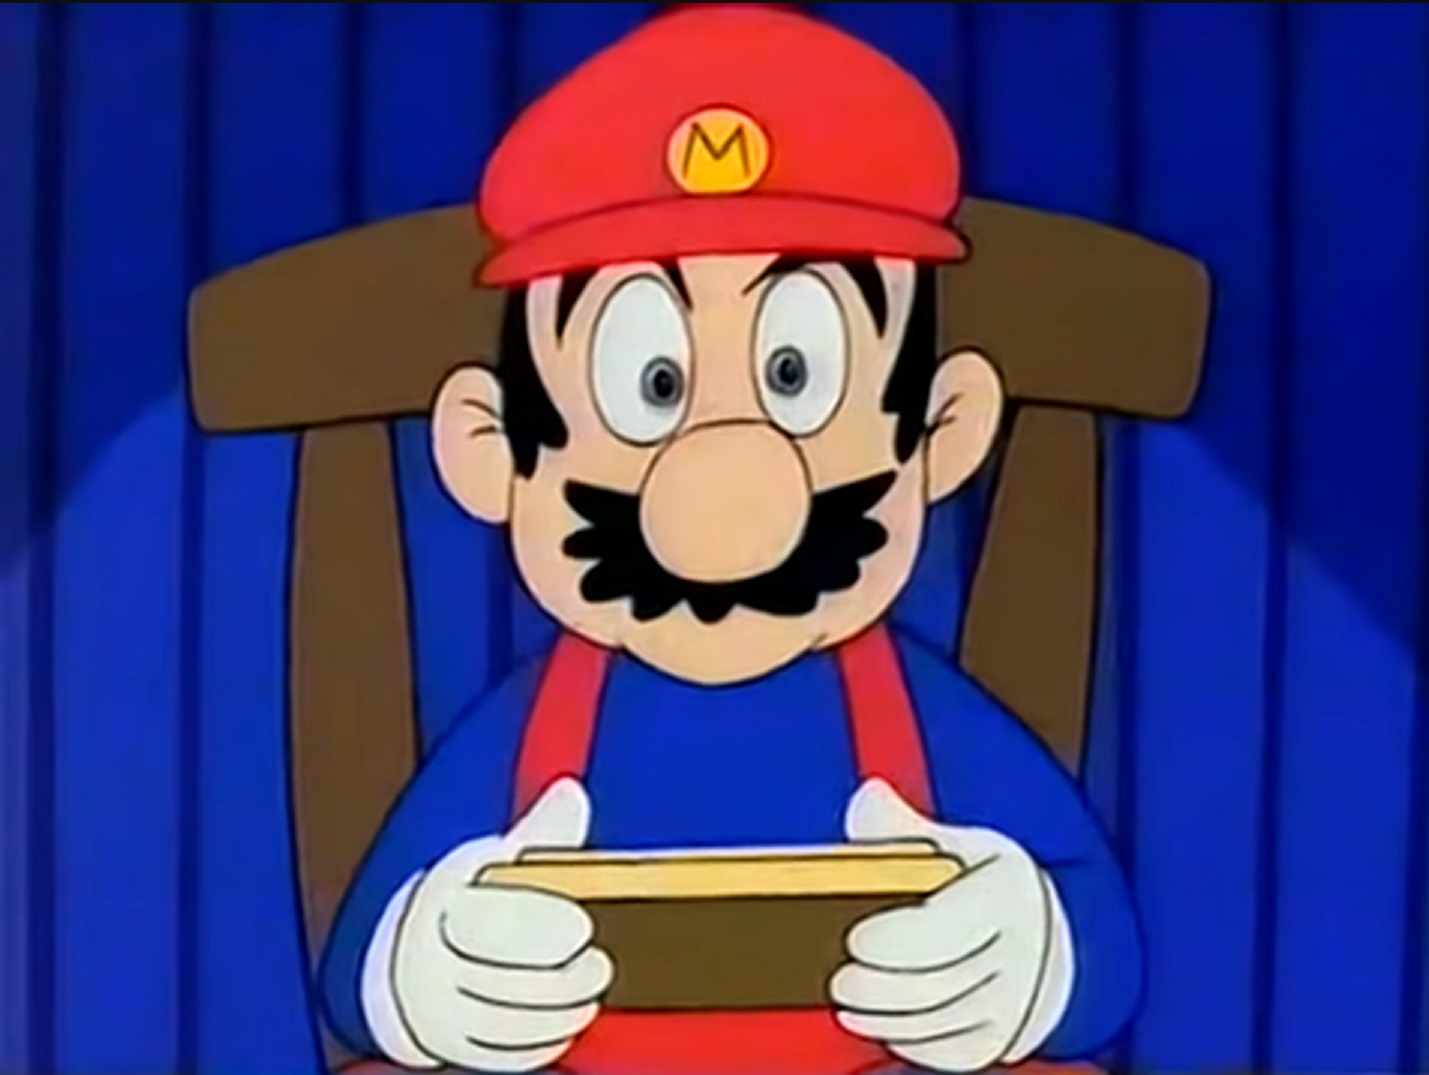 17 Facts About Mario (Super Mario Bros.) 